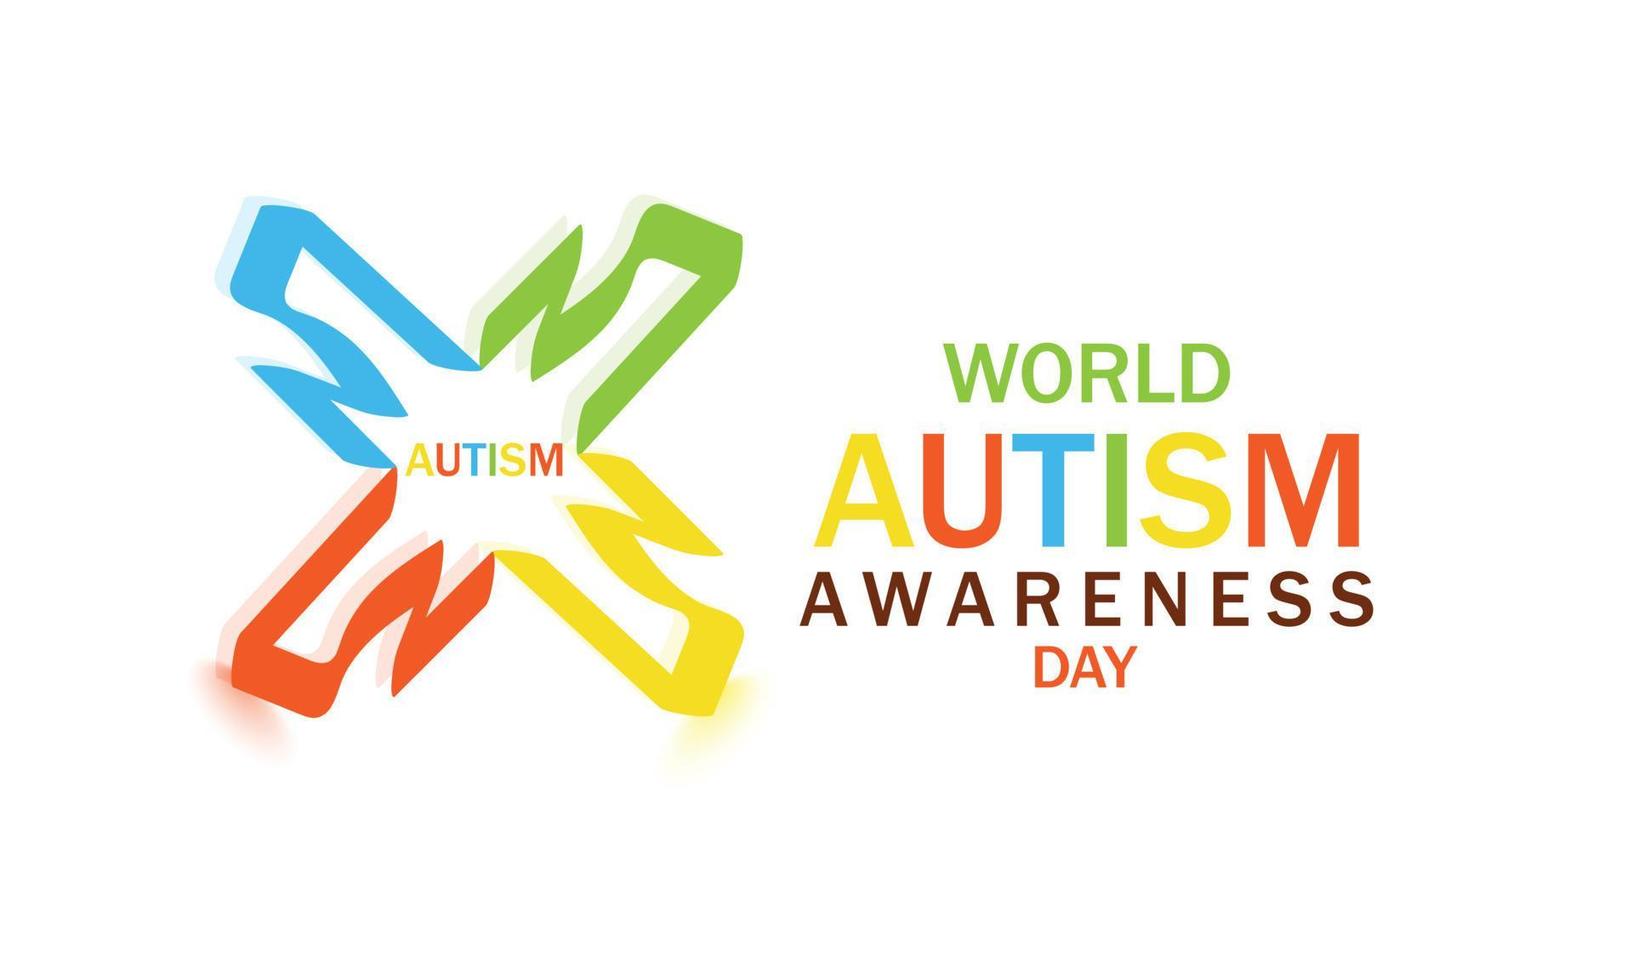 monde autisme conscience journée avril 2. modèle pour arrière-plan, bannière, carte, affiche vecteur